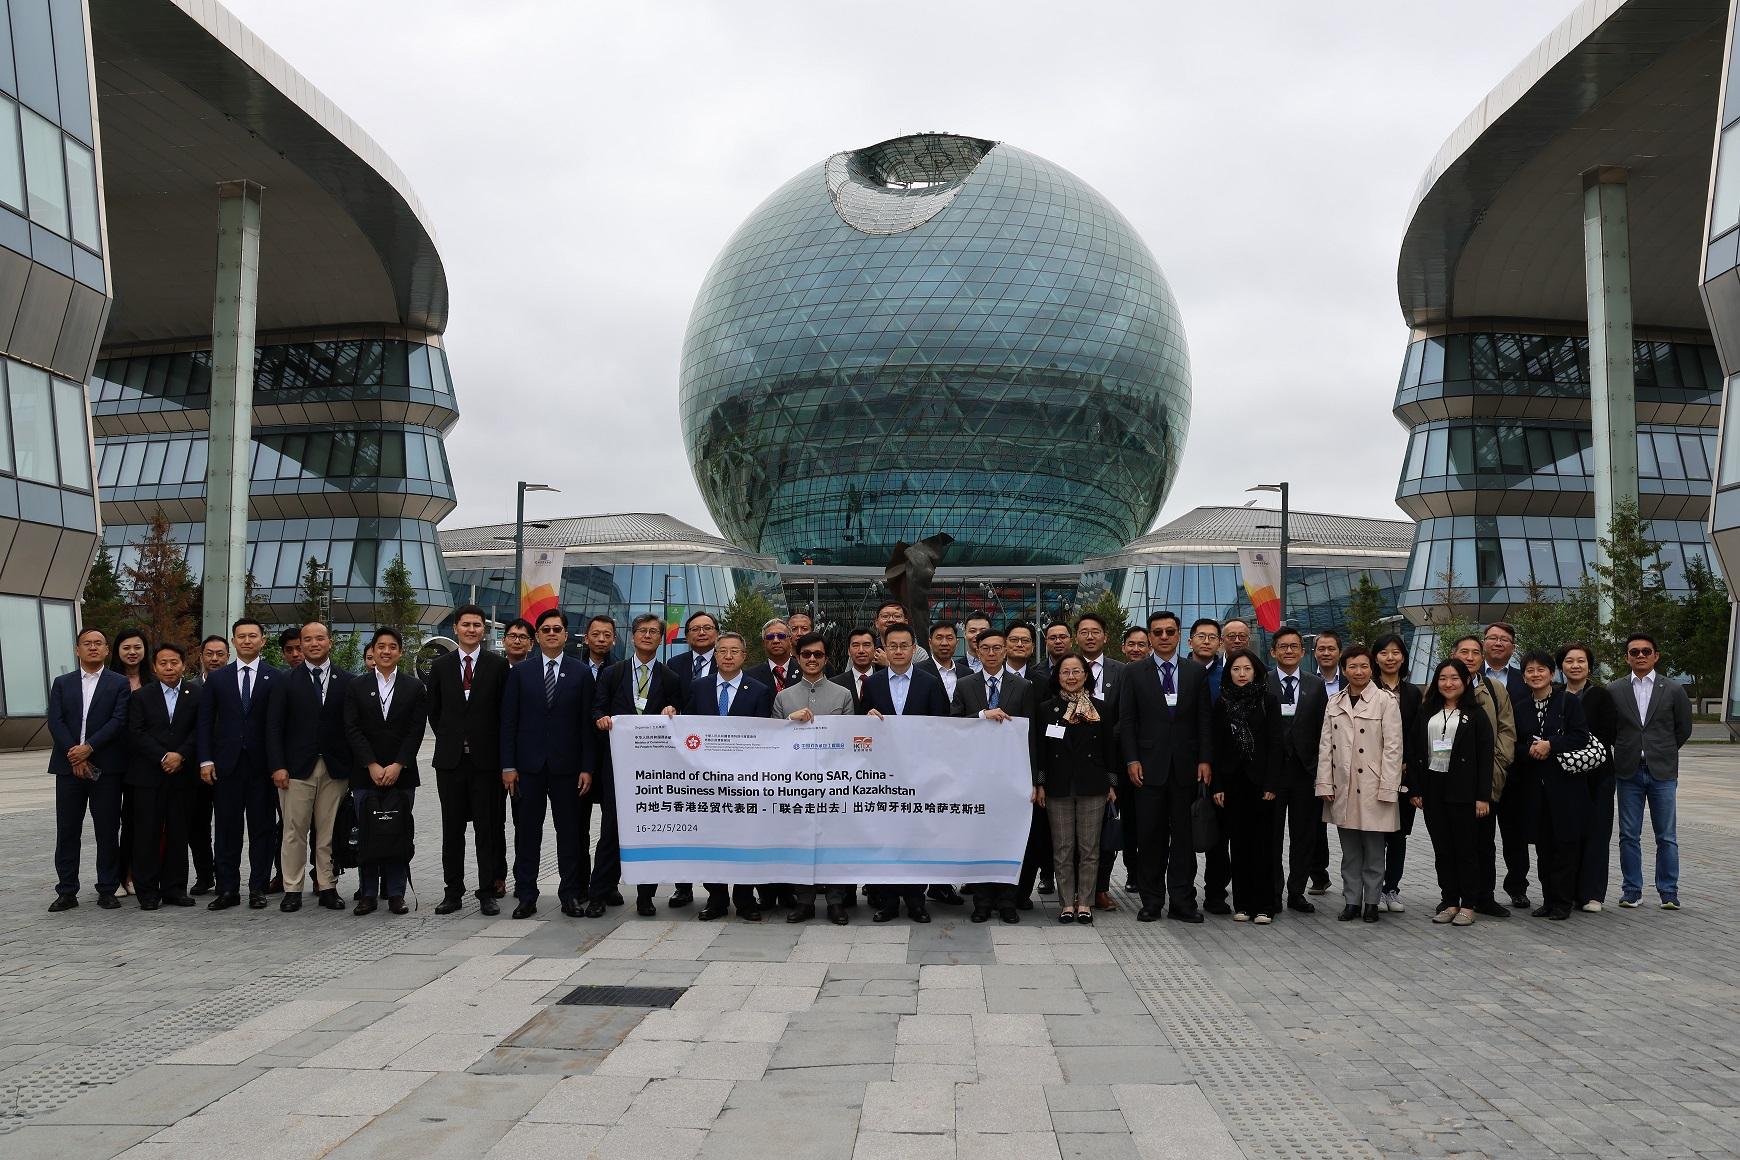 代表團五月二十日在哈薩克斯坦參觀阿斯塔納樞紐國際IT初創科技園。